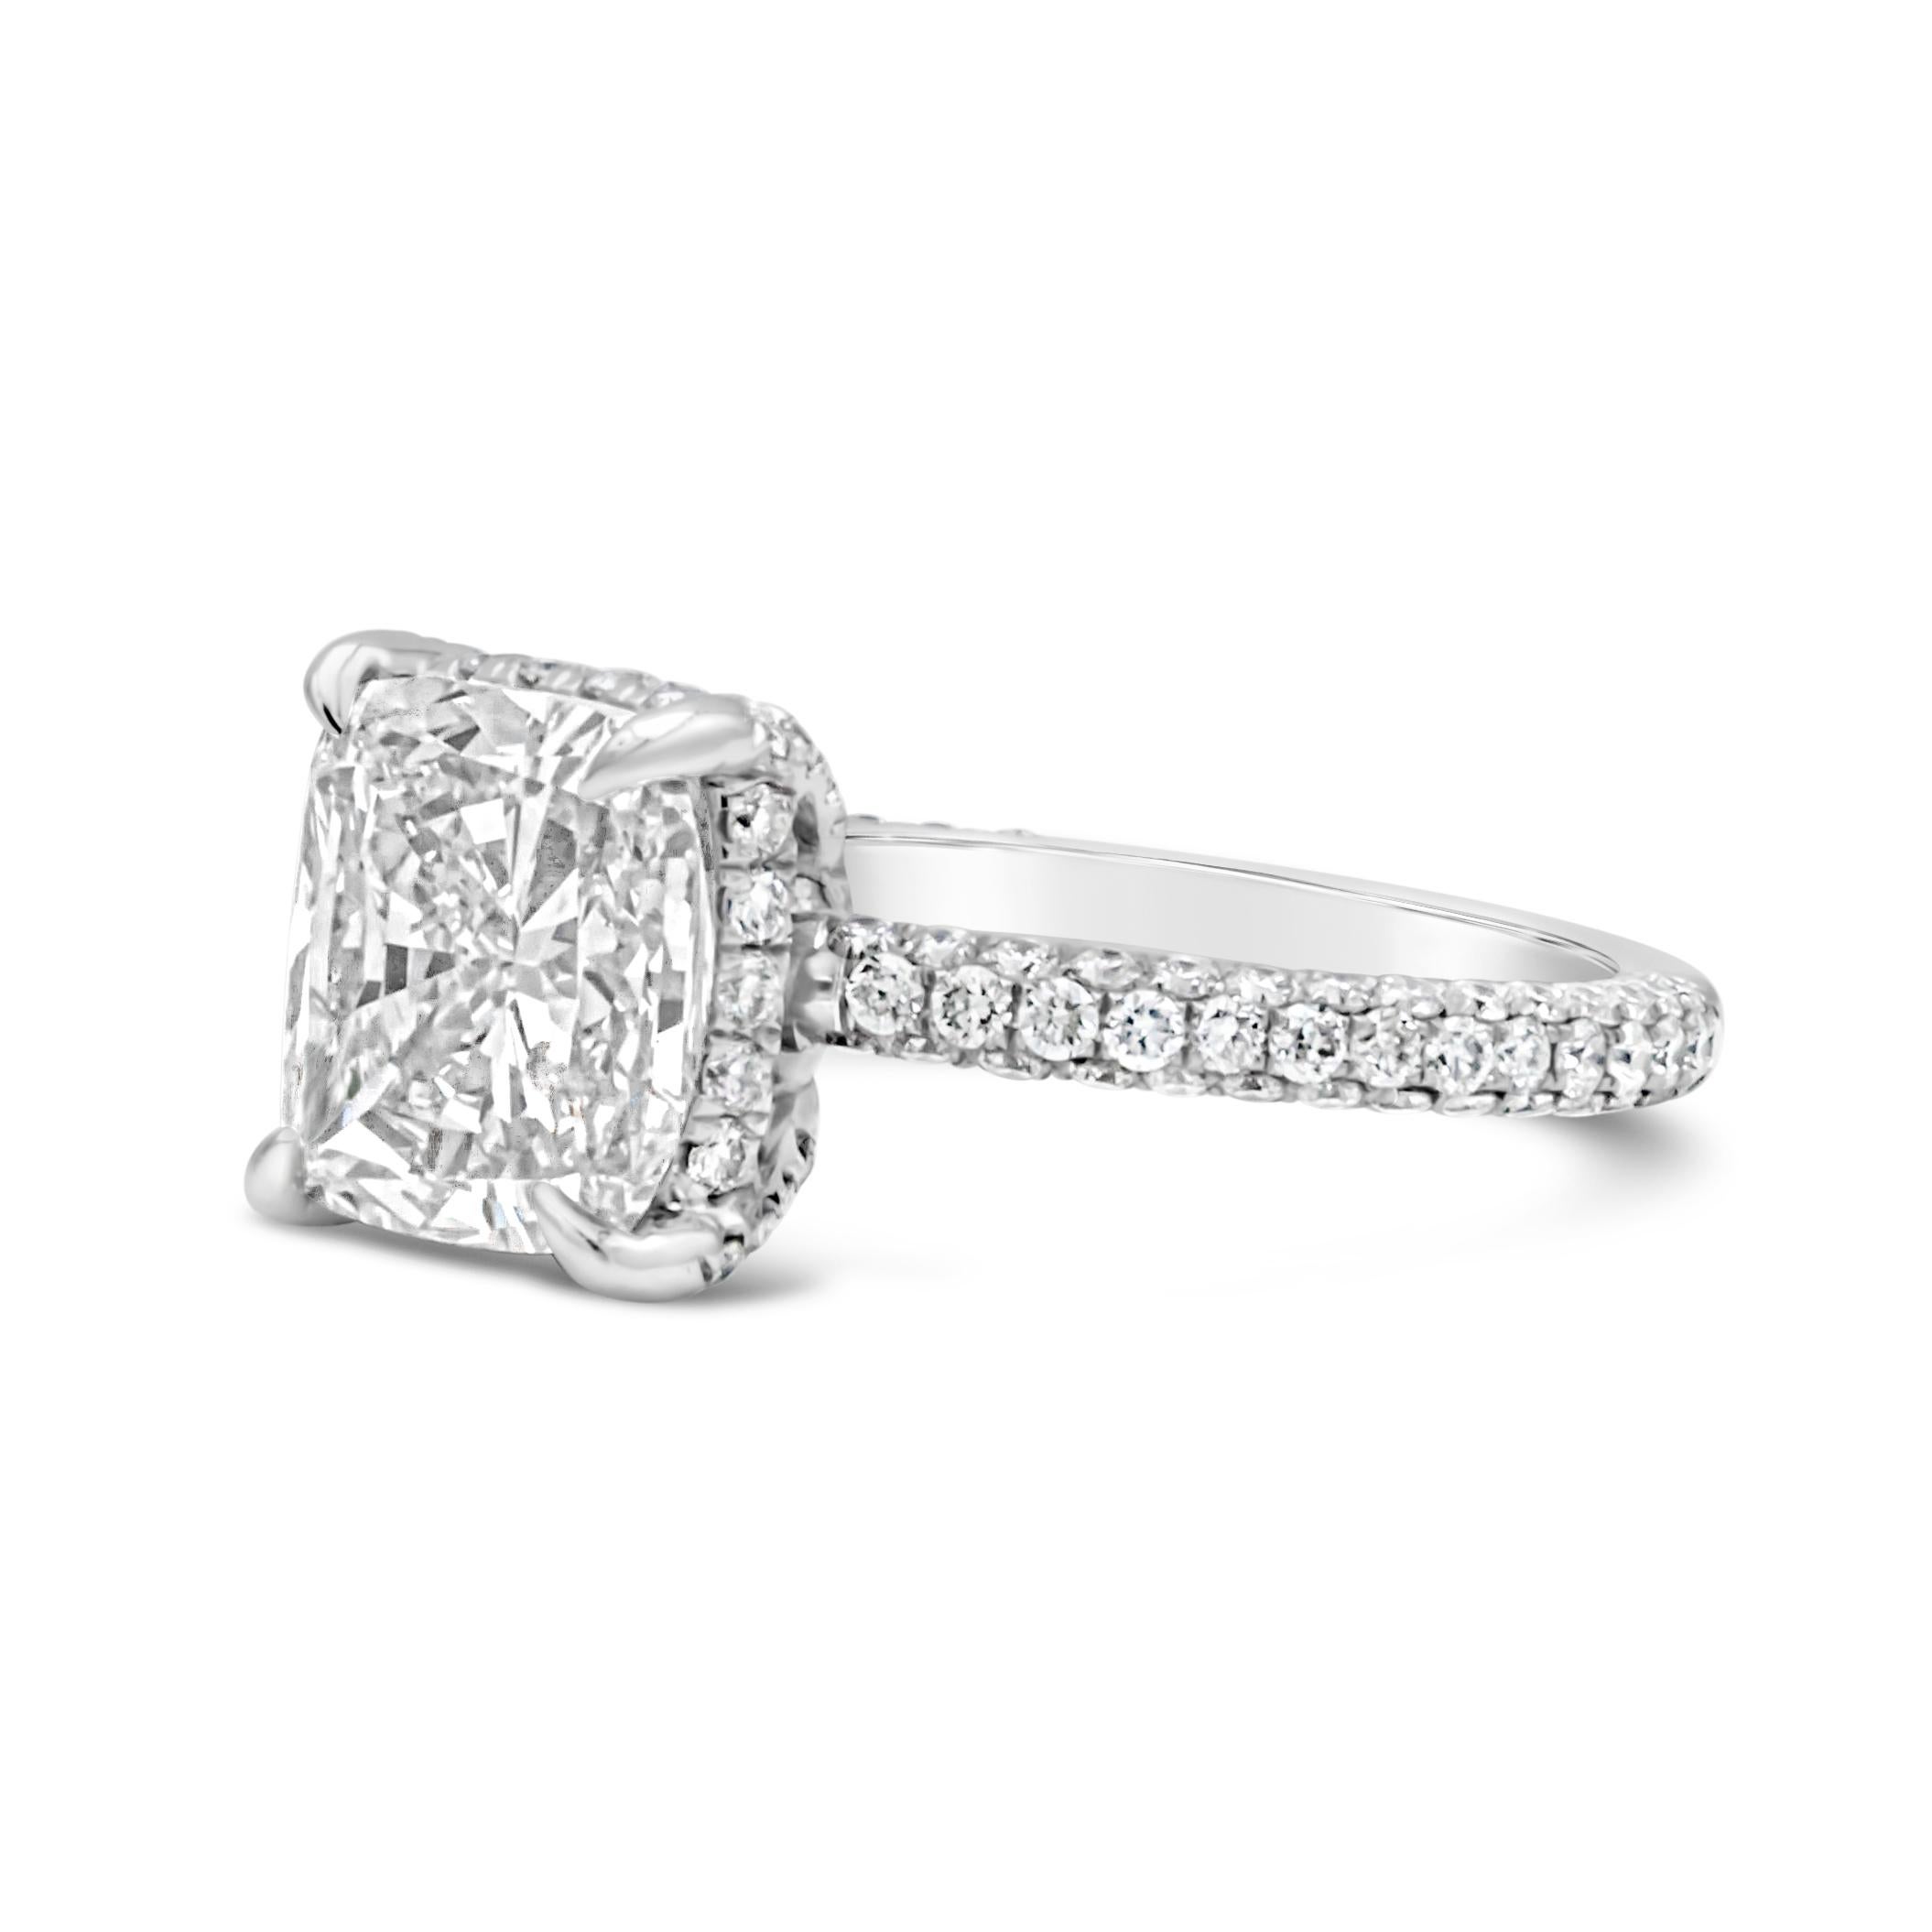 Ein klassischer und eleganter Verlobungsring mit einem GIA-zertifizierten Diamanten von 3,01 Karat im Kissenschliff, Farbe J und Reinheit I1. 120 runde Diamanten im Brillantschliff sind 3/4 des Ringes in Wellenform gefasst und wiegen insgesamt 0,85